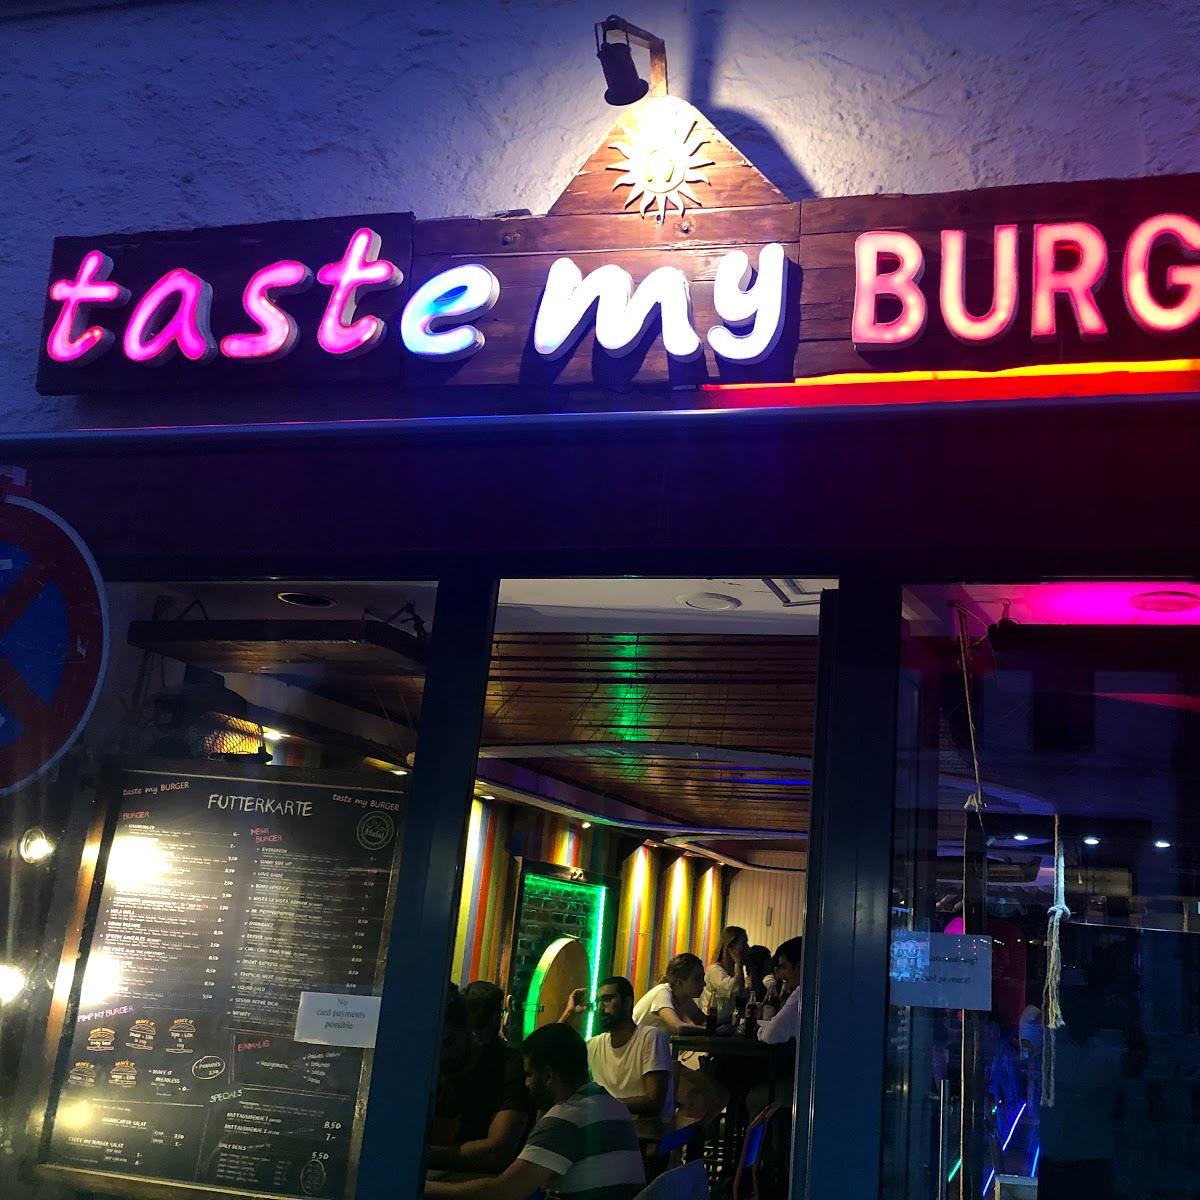 Restaurant "Taste my Burger" in München